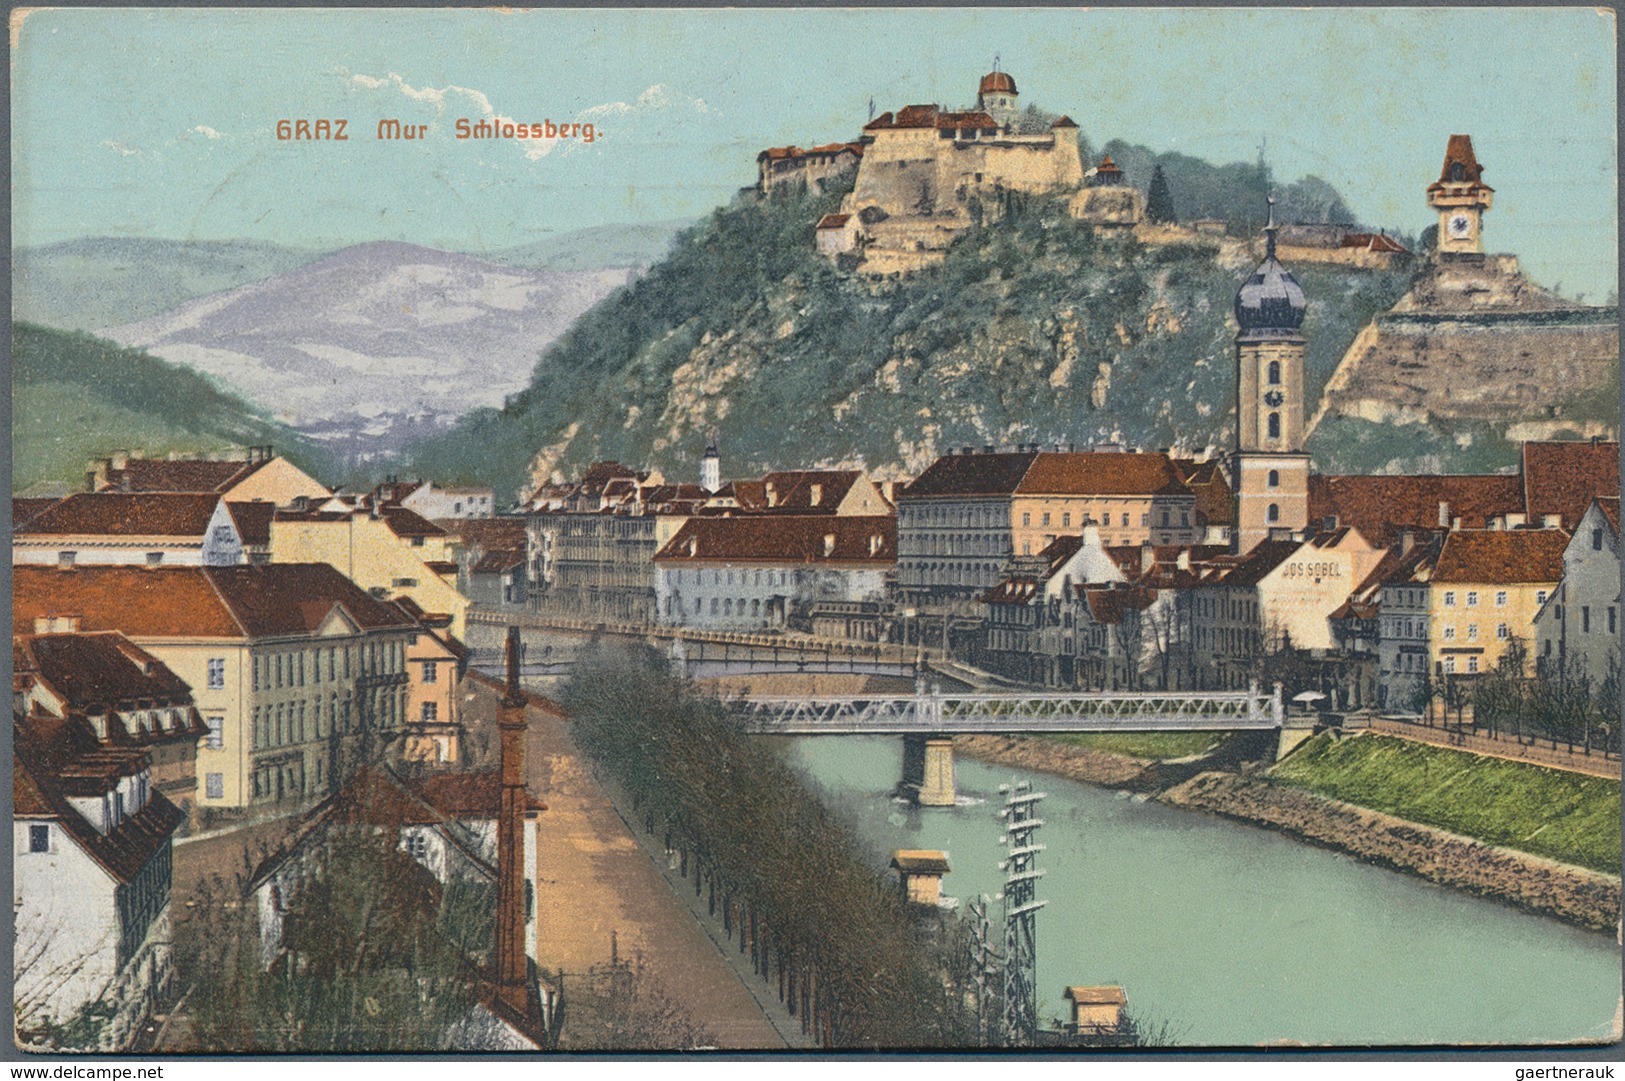 Ansichtskarten: Österreich: 1905/1921 ca., SPENDENMARKEN auf Ansichtskarten: aussergewöhnliches Konv